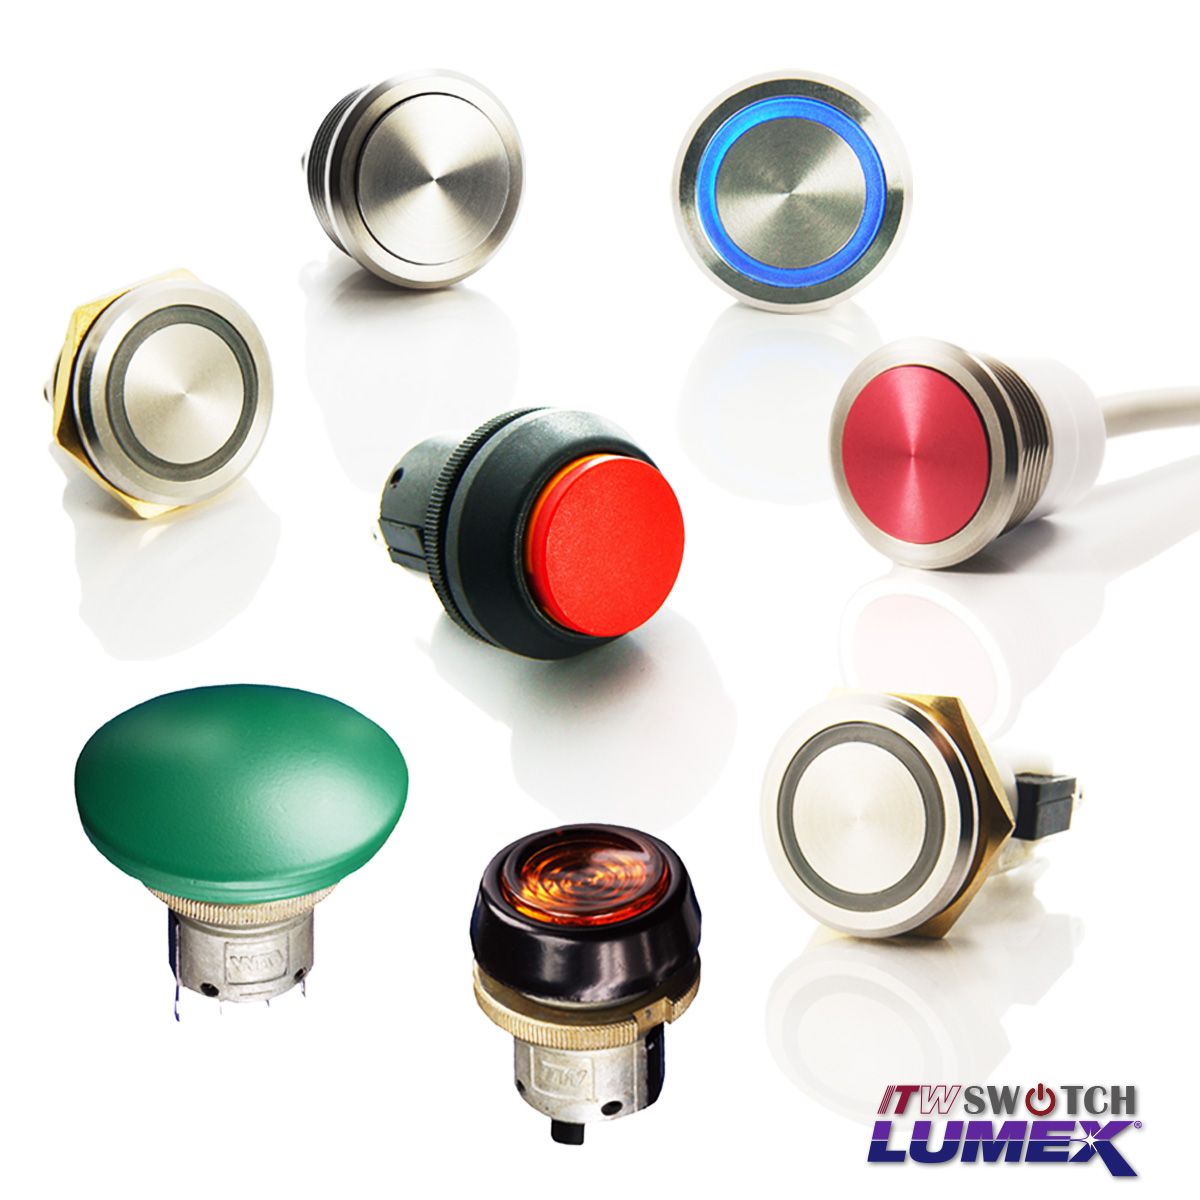 Le bouton-poussoir de découpe du panneau de 22 mm passe deITW Lumex Switchsont disponibles dans une sélection variée de modèles.